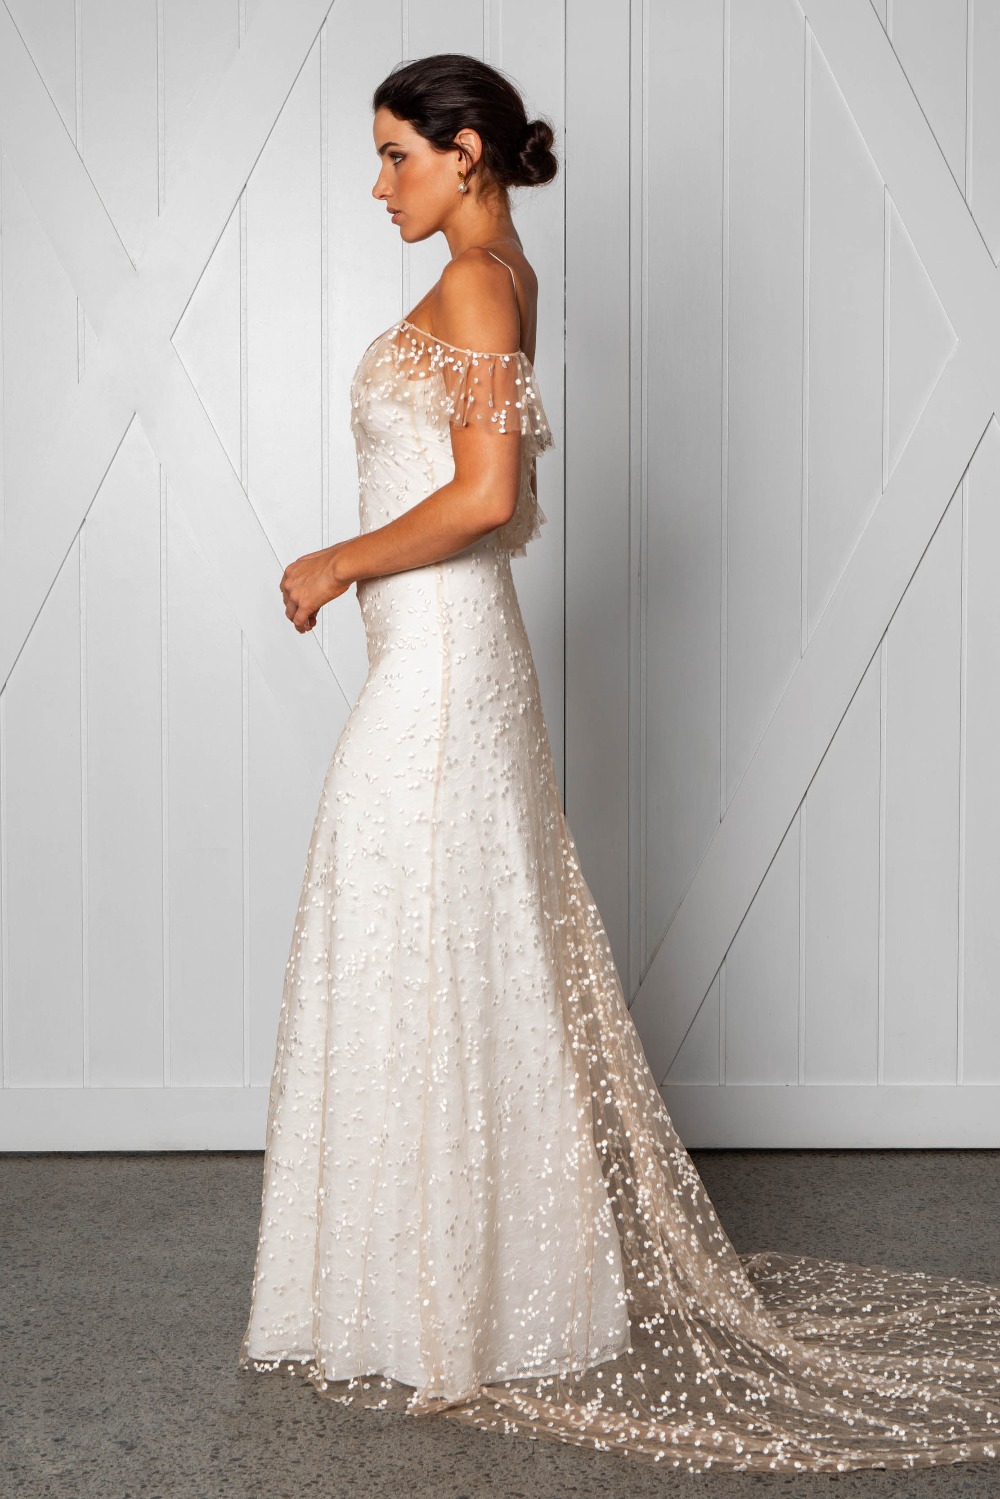 marloe-wedding-dress-by-grace-loves-lace-1600-x-10